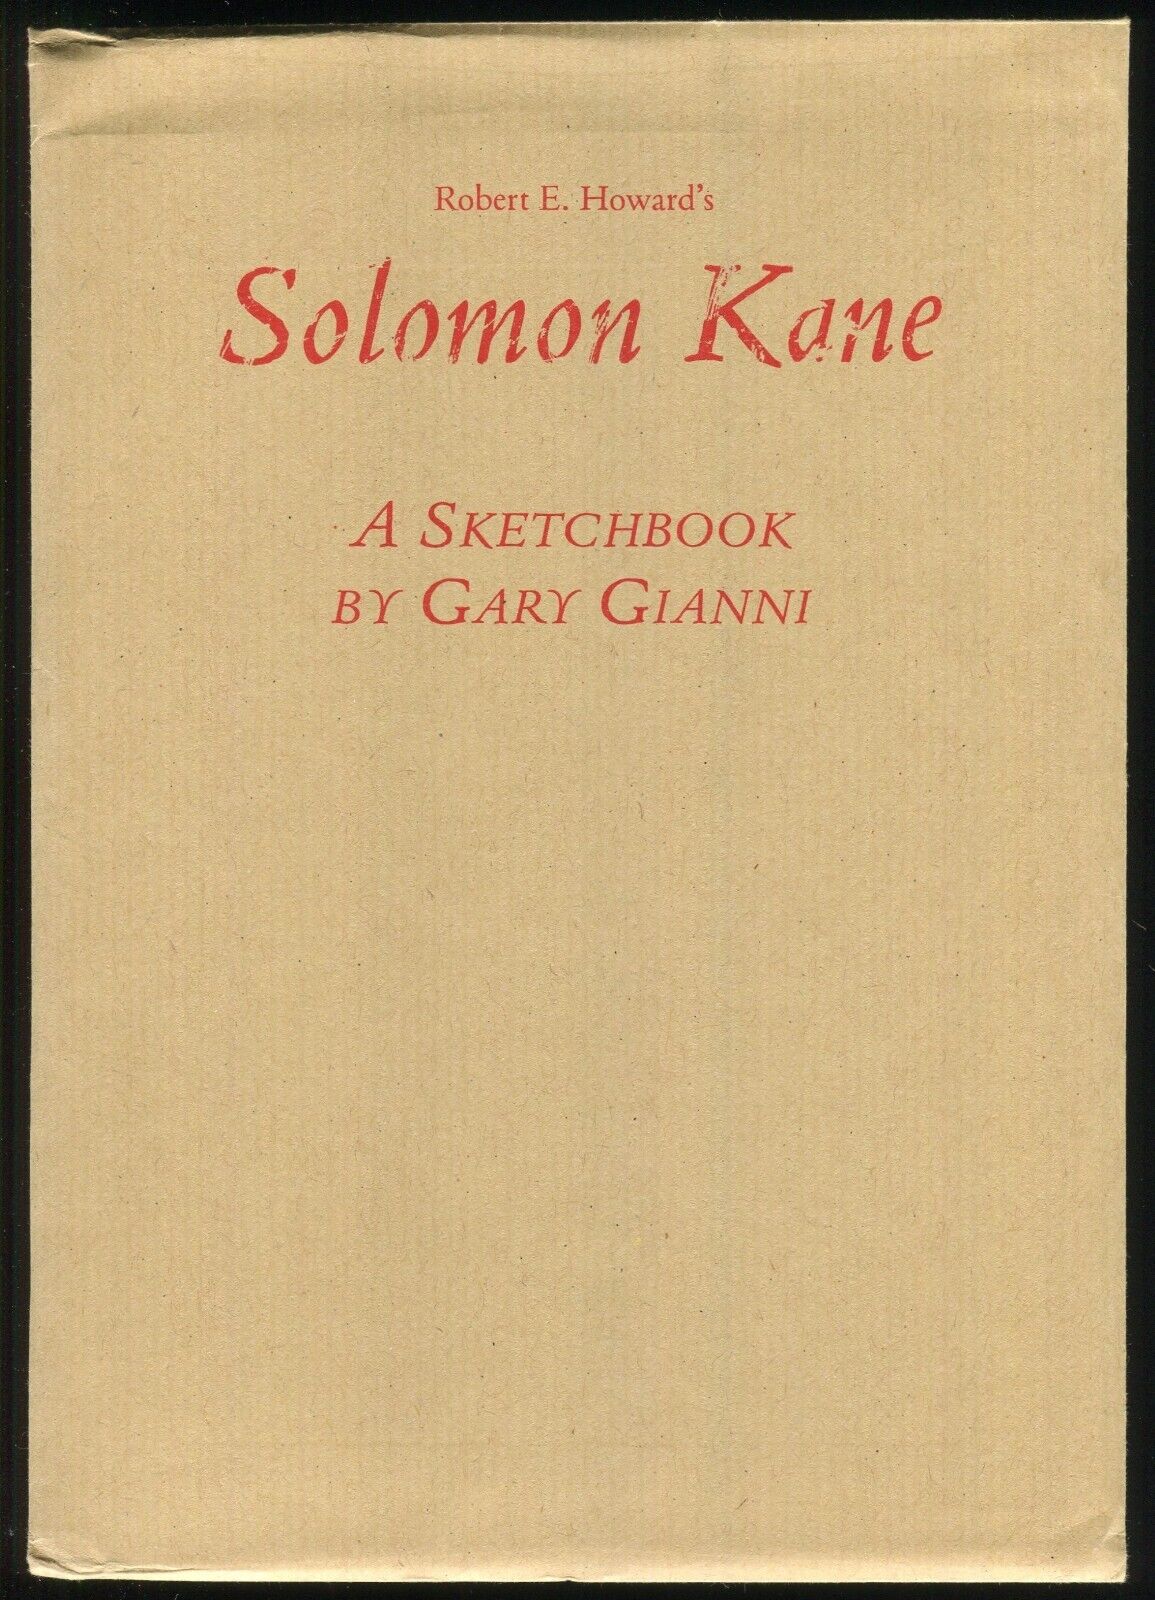 Robert E Howards Solomon Kane Sketchbook by Gary Gianni Wandering Star REH Poem